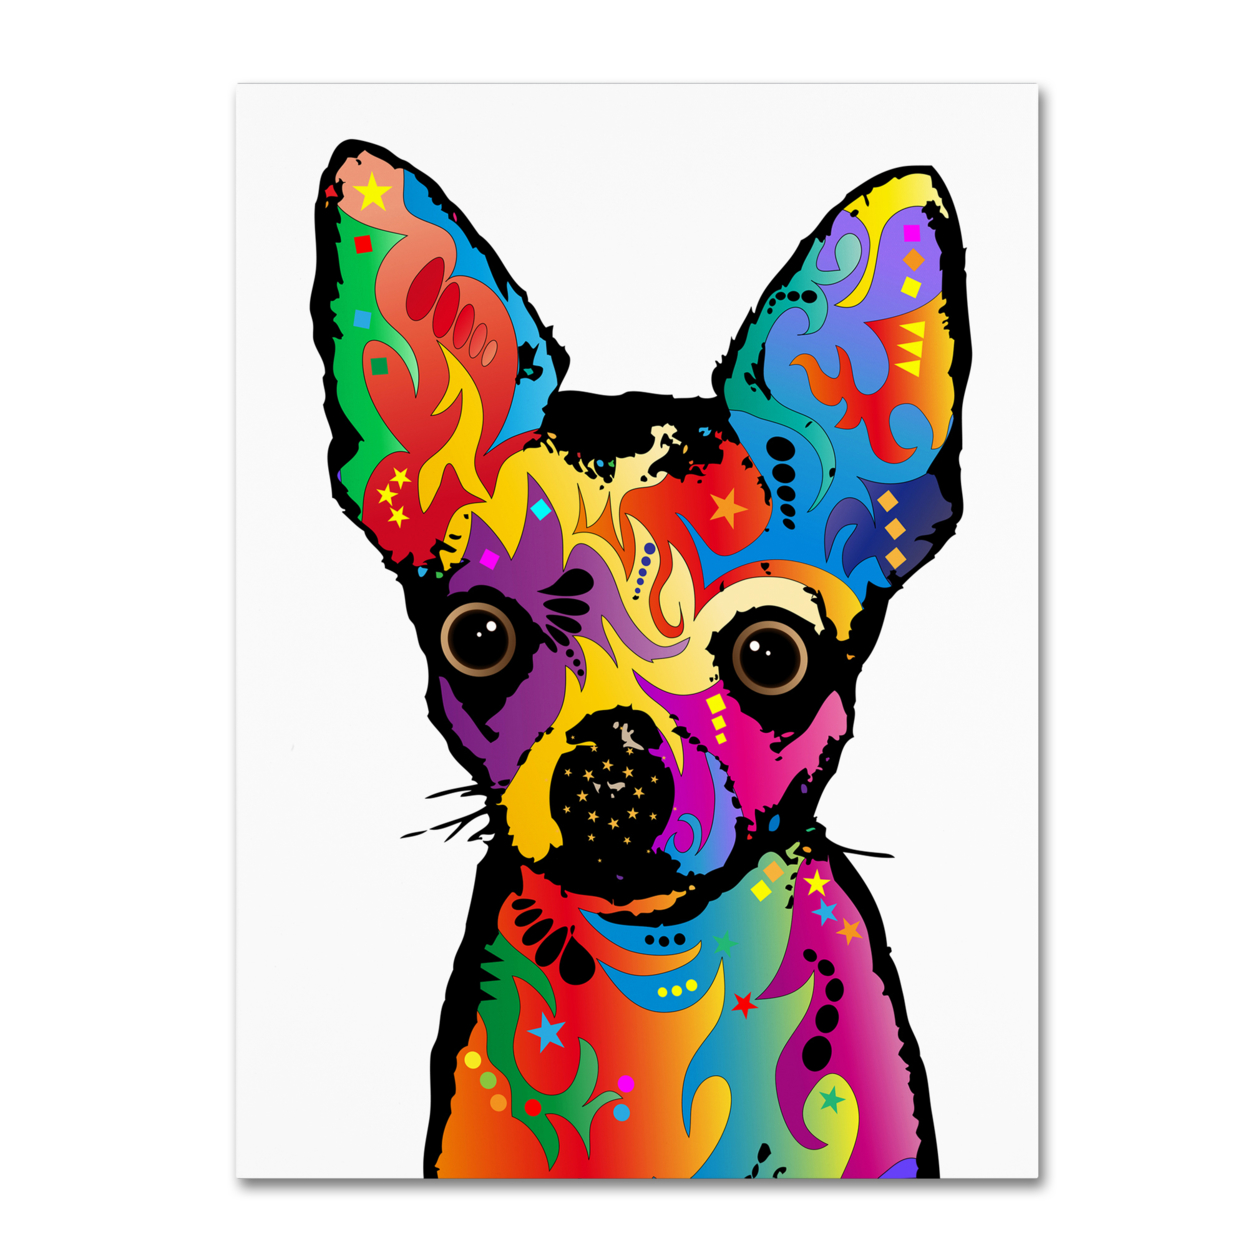 Michael Tompsett 'Chihuahua Dog White' Canvas Art 18 X 24